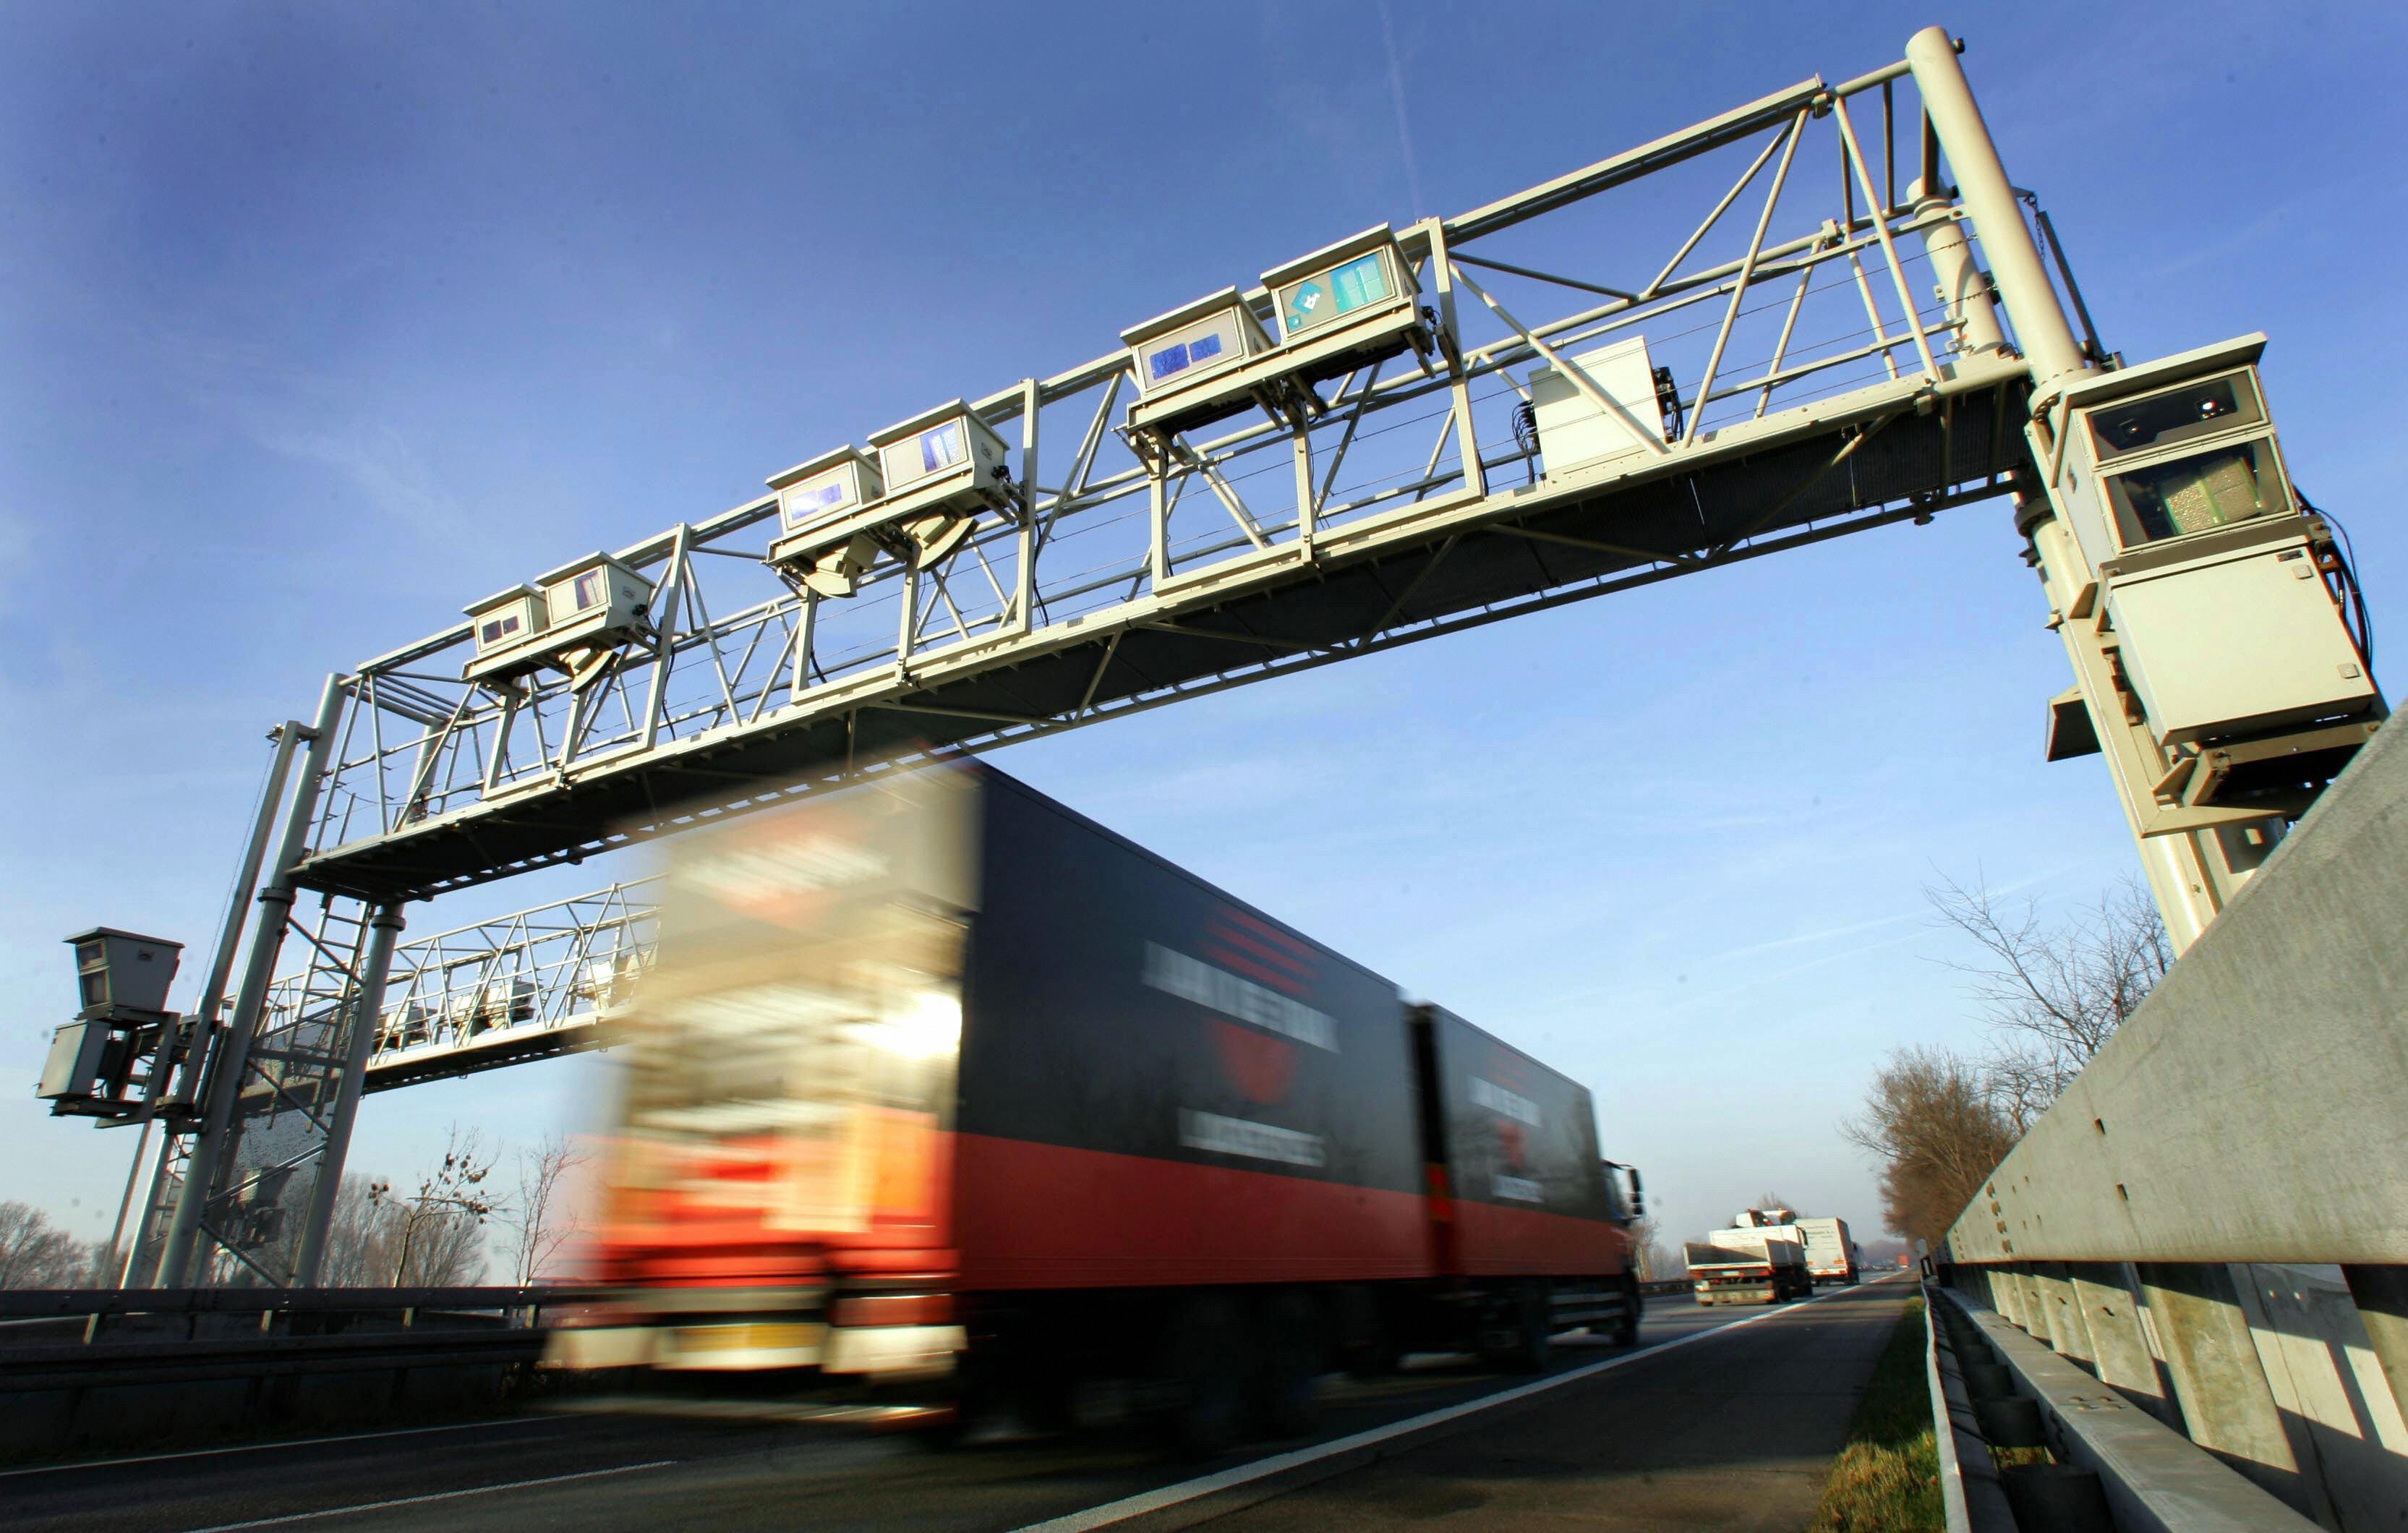 Nach LkW-Maut-Urteil: Transportbranche will Ausgleichsforderungen an Bund stellen